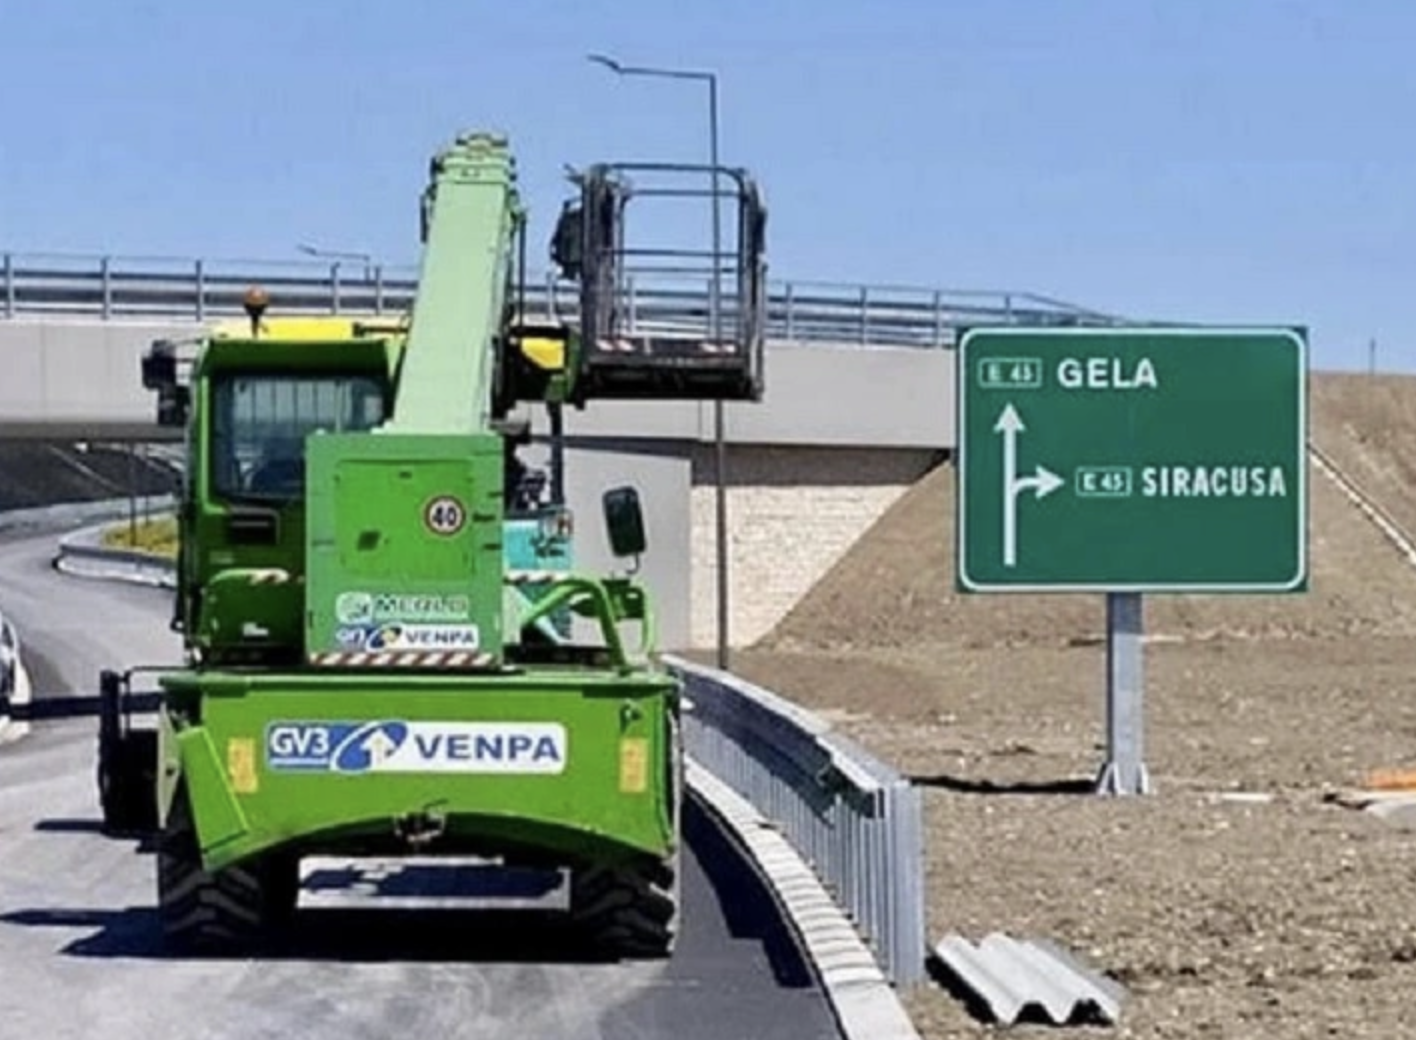 Autostrada Siracusa - Gela, svincolo di Cassibile chiuso fino al 13 aprile